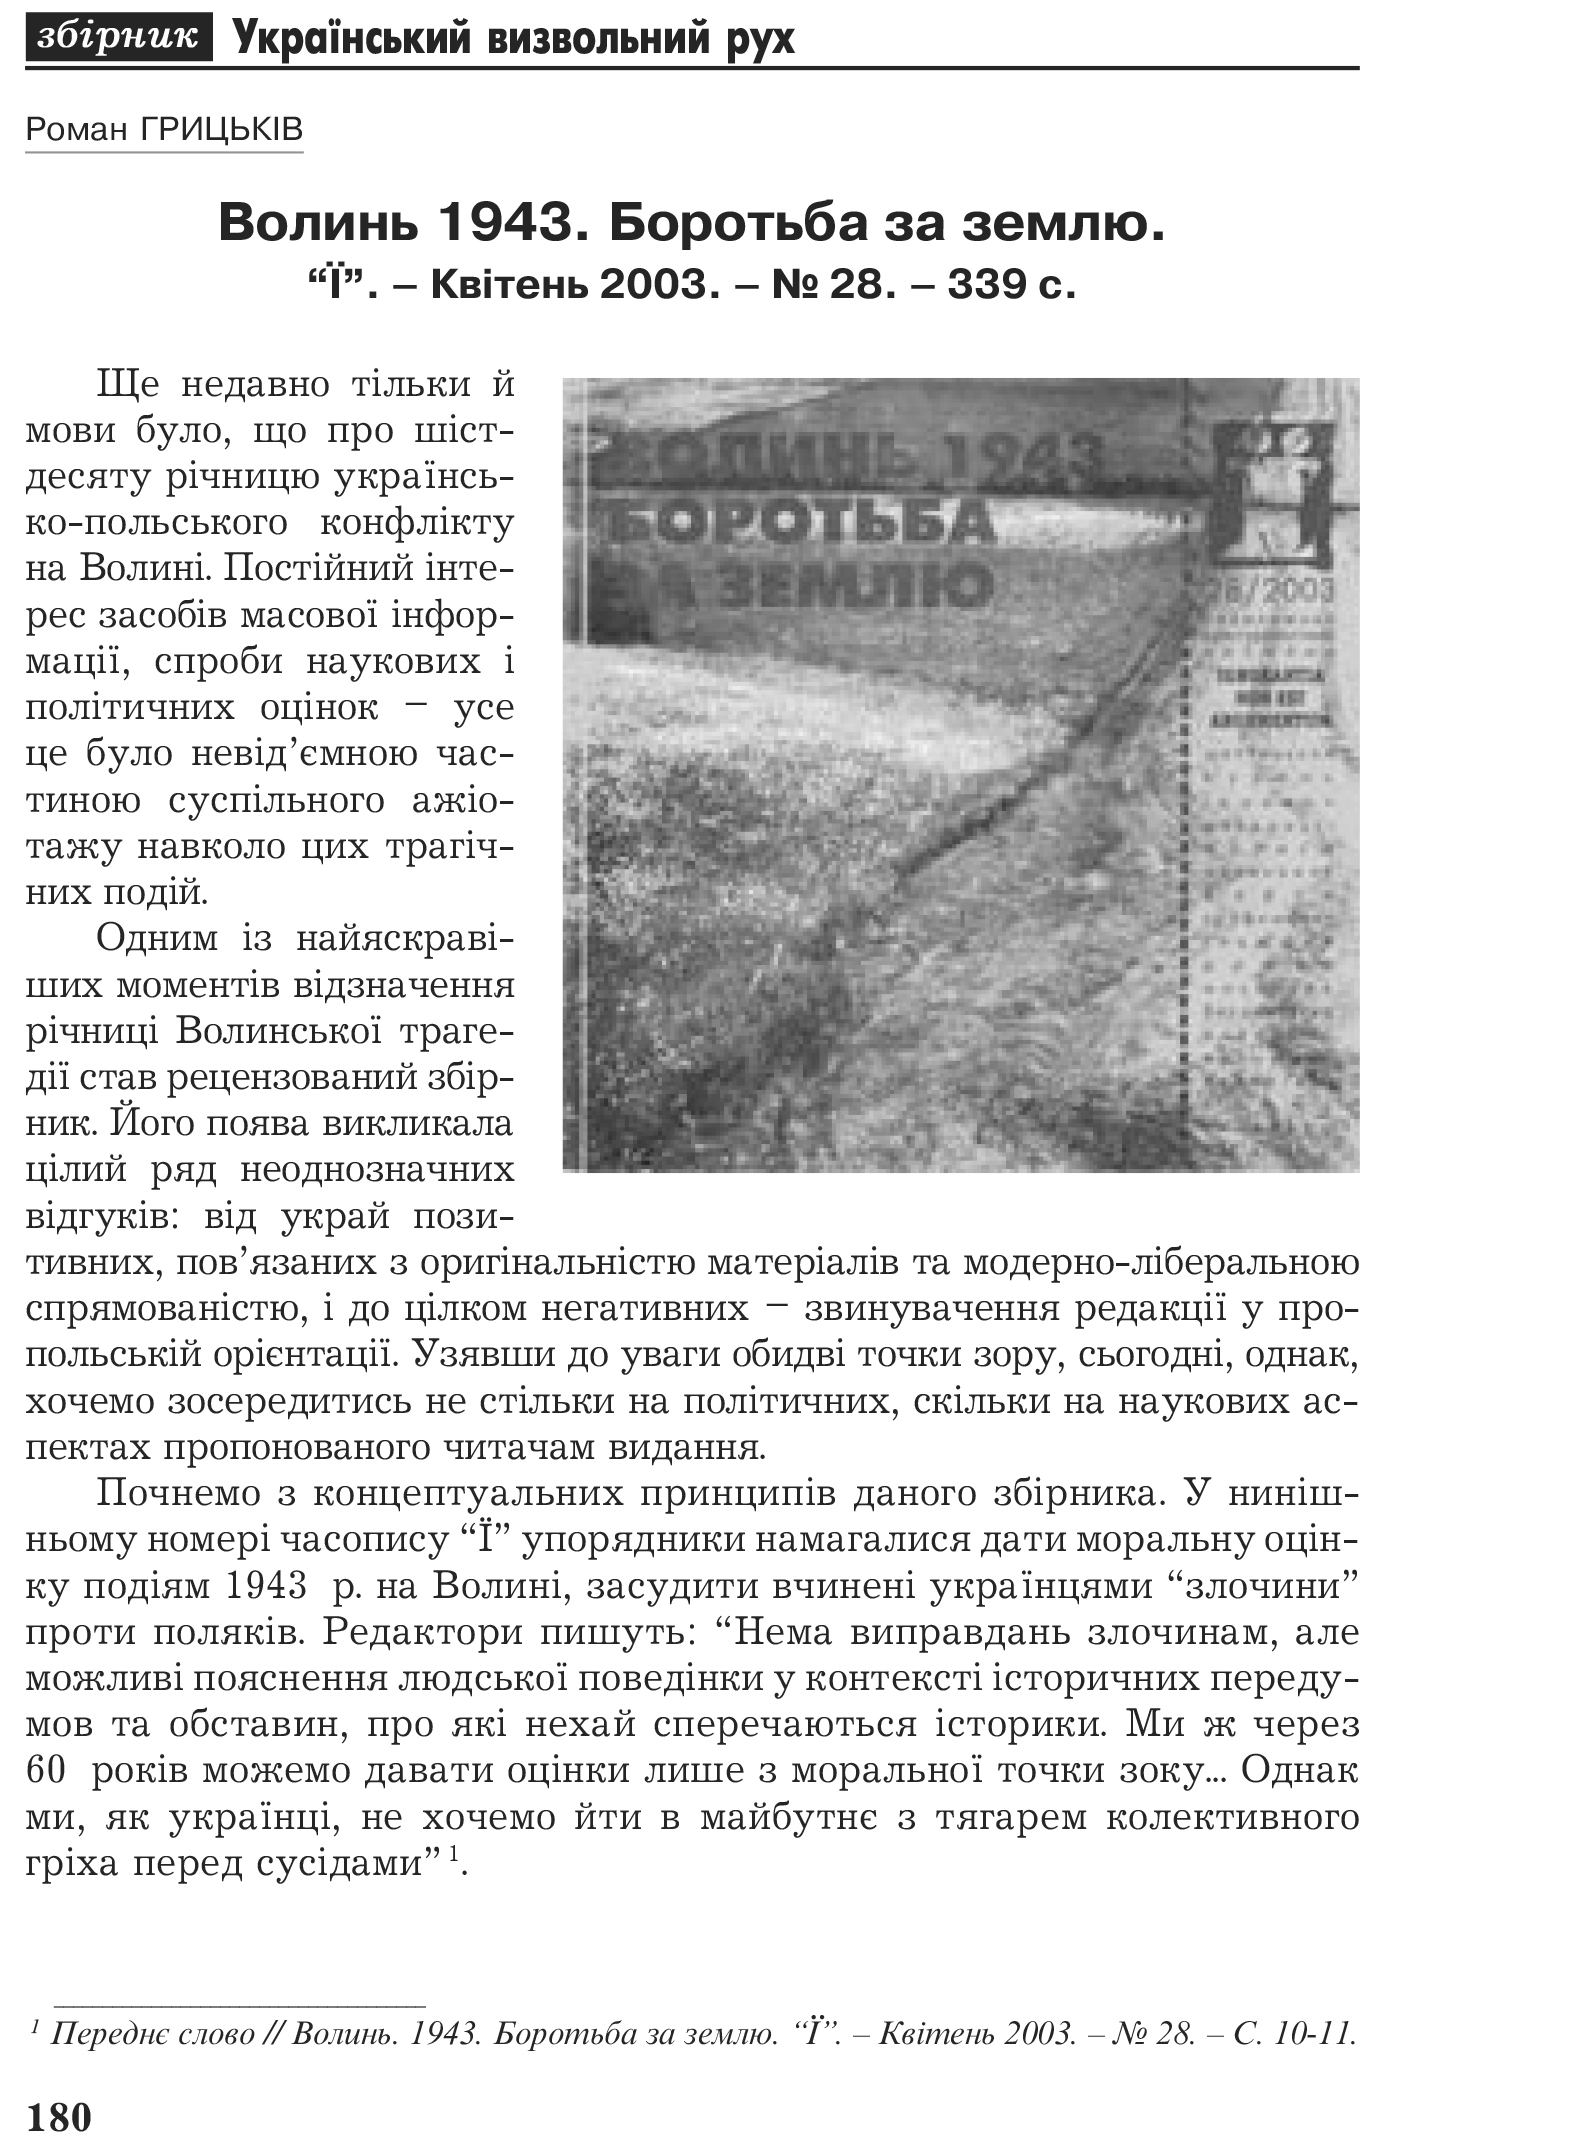 Український визвольний рух №2, ст. 180 - 187